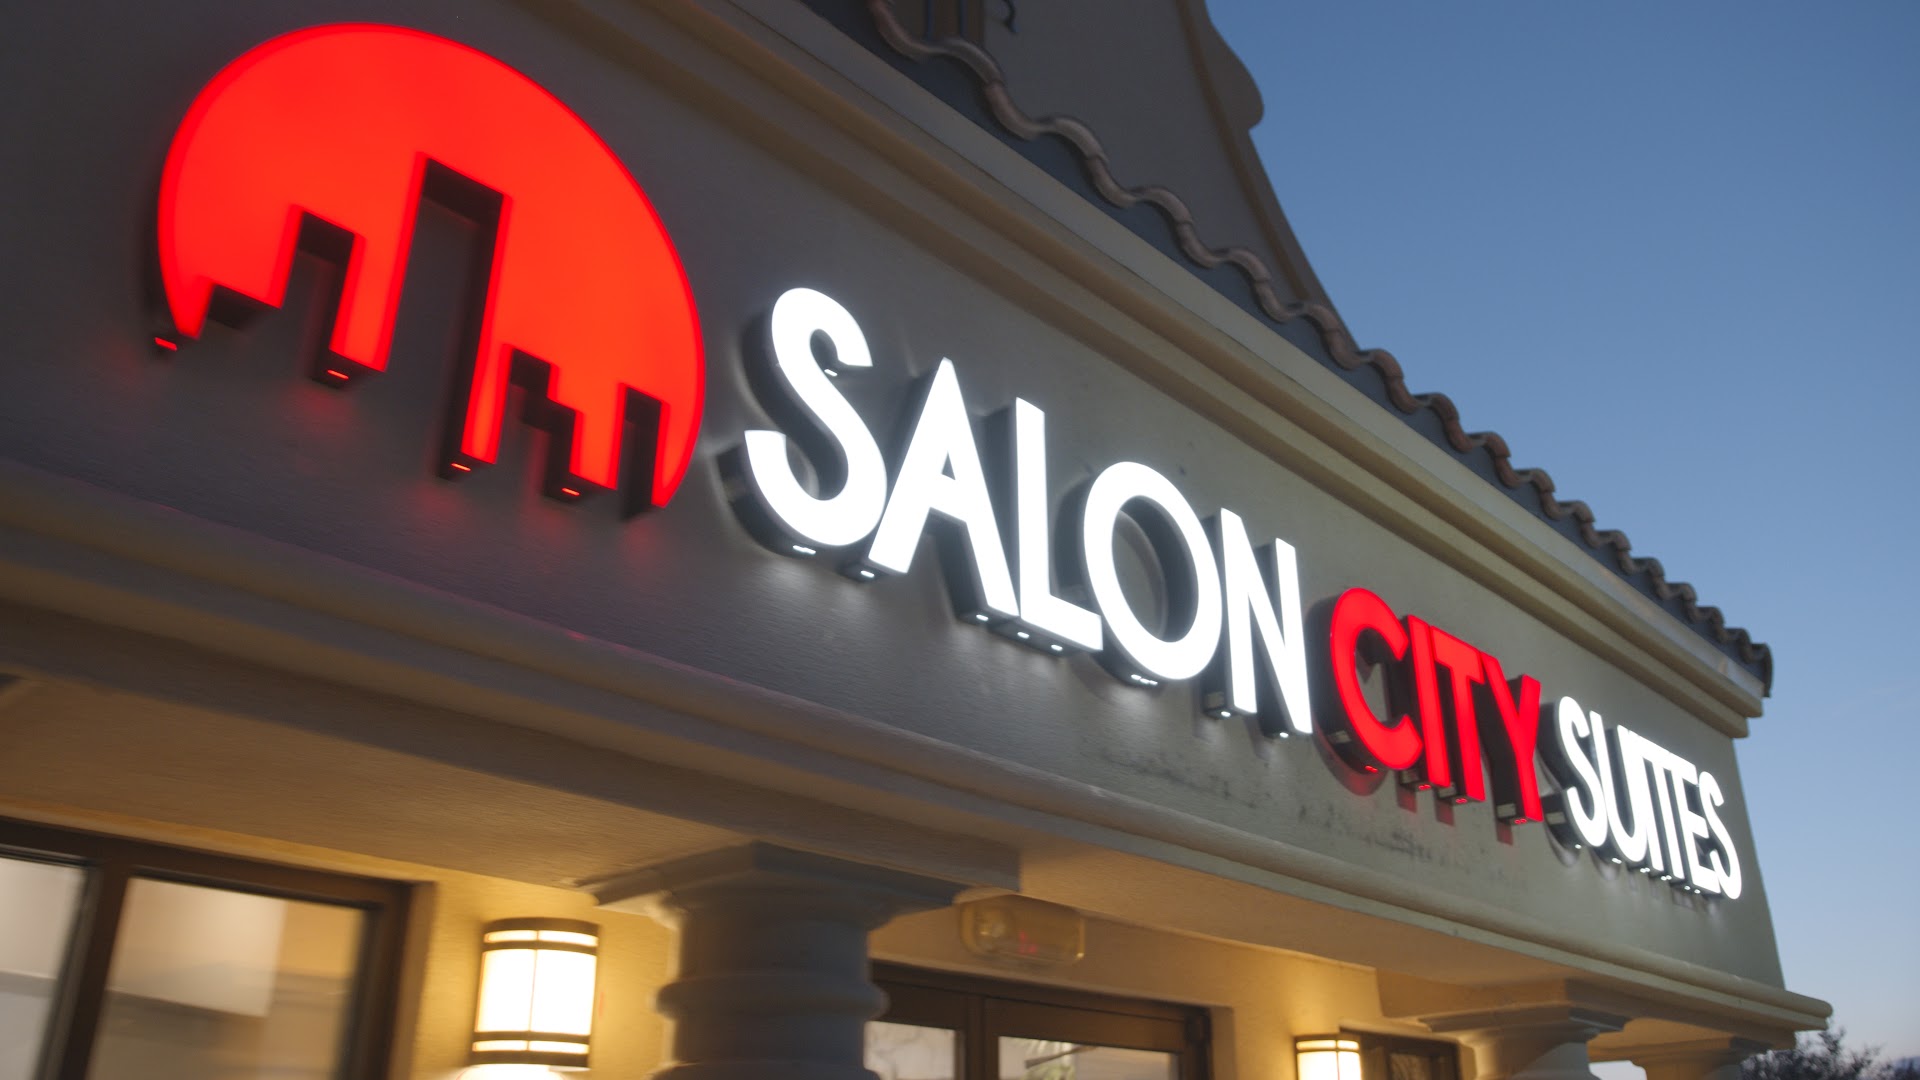 Salon City Suites